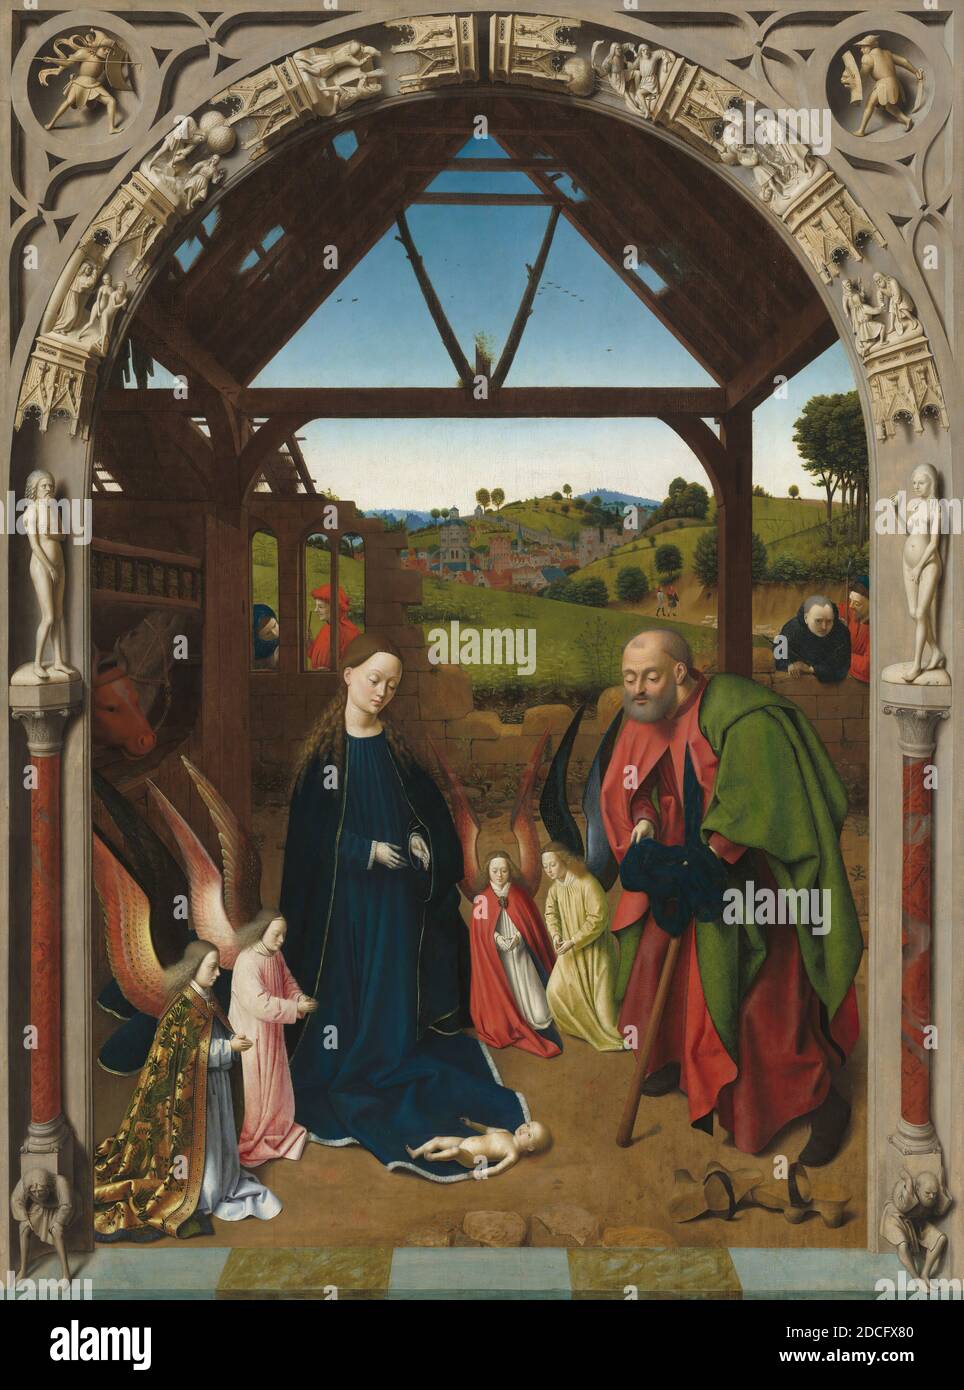 Petrus Christus, (artiste), Netherlandish, actif 1444 - 1475/1476, The Nativité, c. 1450, huile sur panneau, surface peinte : 127.6 x 94.9 cm (50 1/4 x 37 3/8 in.), hors tout (panneau) : 130 x 97 cm (51 3/16 x 38 3/16 in.), encadré : 149.2 x 118.4 cm (58 3/4 x 46 5/8 po), la Nativité, l'une des plus importantes peintures de Dévotion de Petrus Christus, souligne la nature sacrificielle de la venue du Christ et montre la scène comme faisant partie d'une chaîne d'événements dans l'histoire de la chute et de la Rédemption de l'humanité. Au premier plan, une arcade sculptée affiche des scènes de la chute comme décrit dans Genèse Banque D'Images